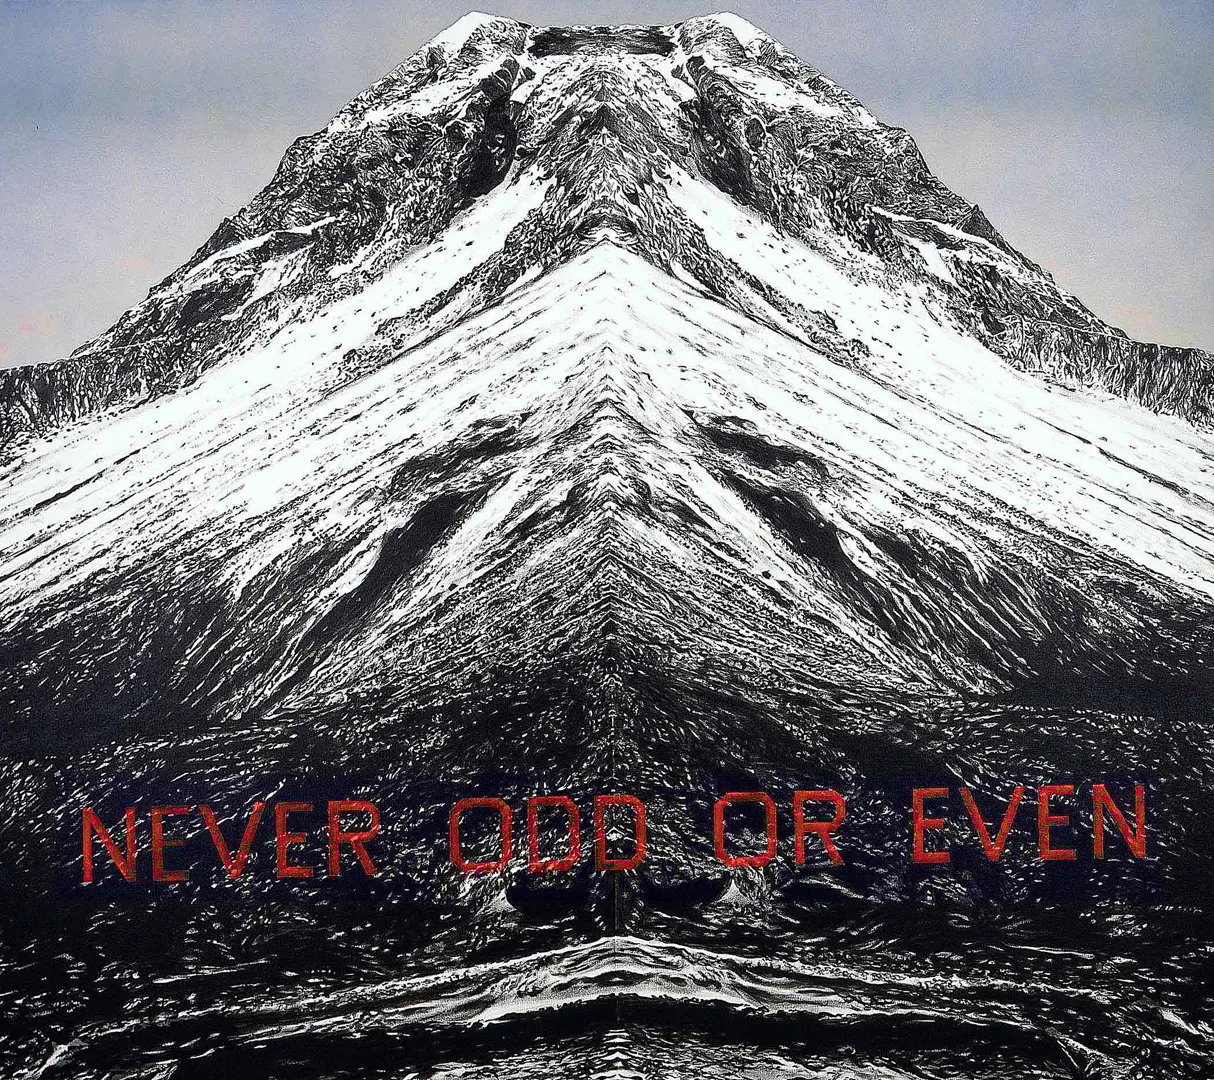 Ed Ruscha - Never Odd or Even, 2001, acrylic on canvas